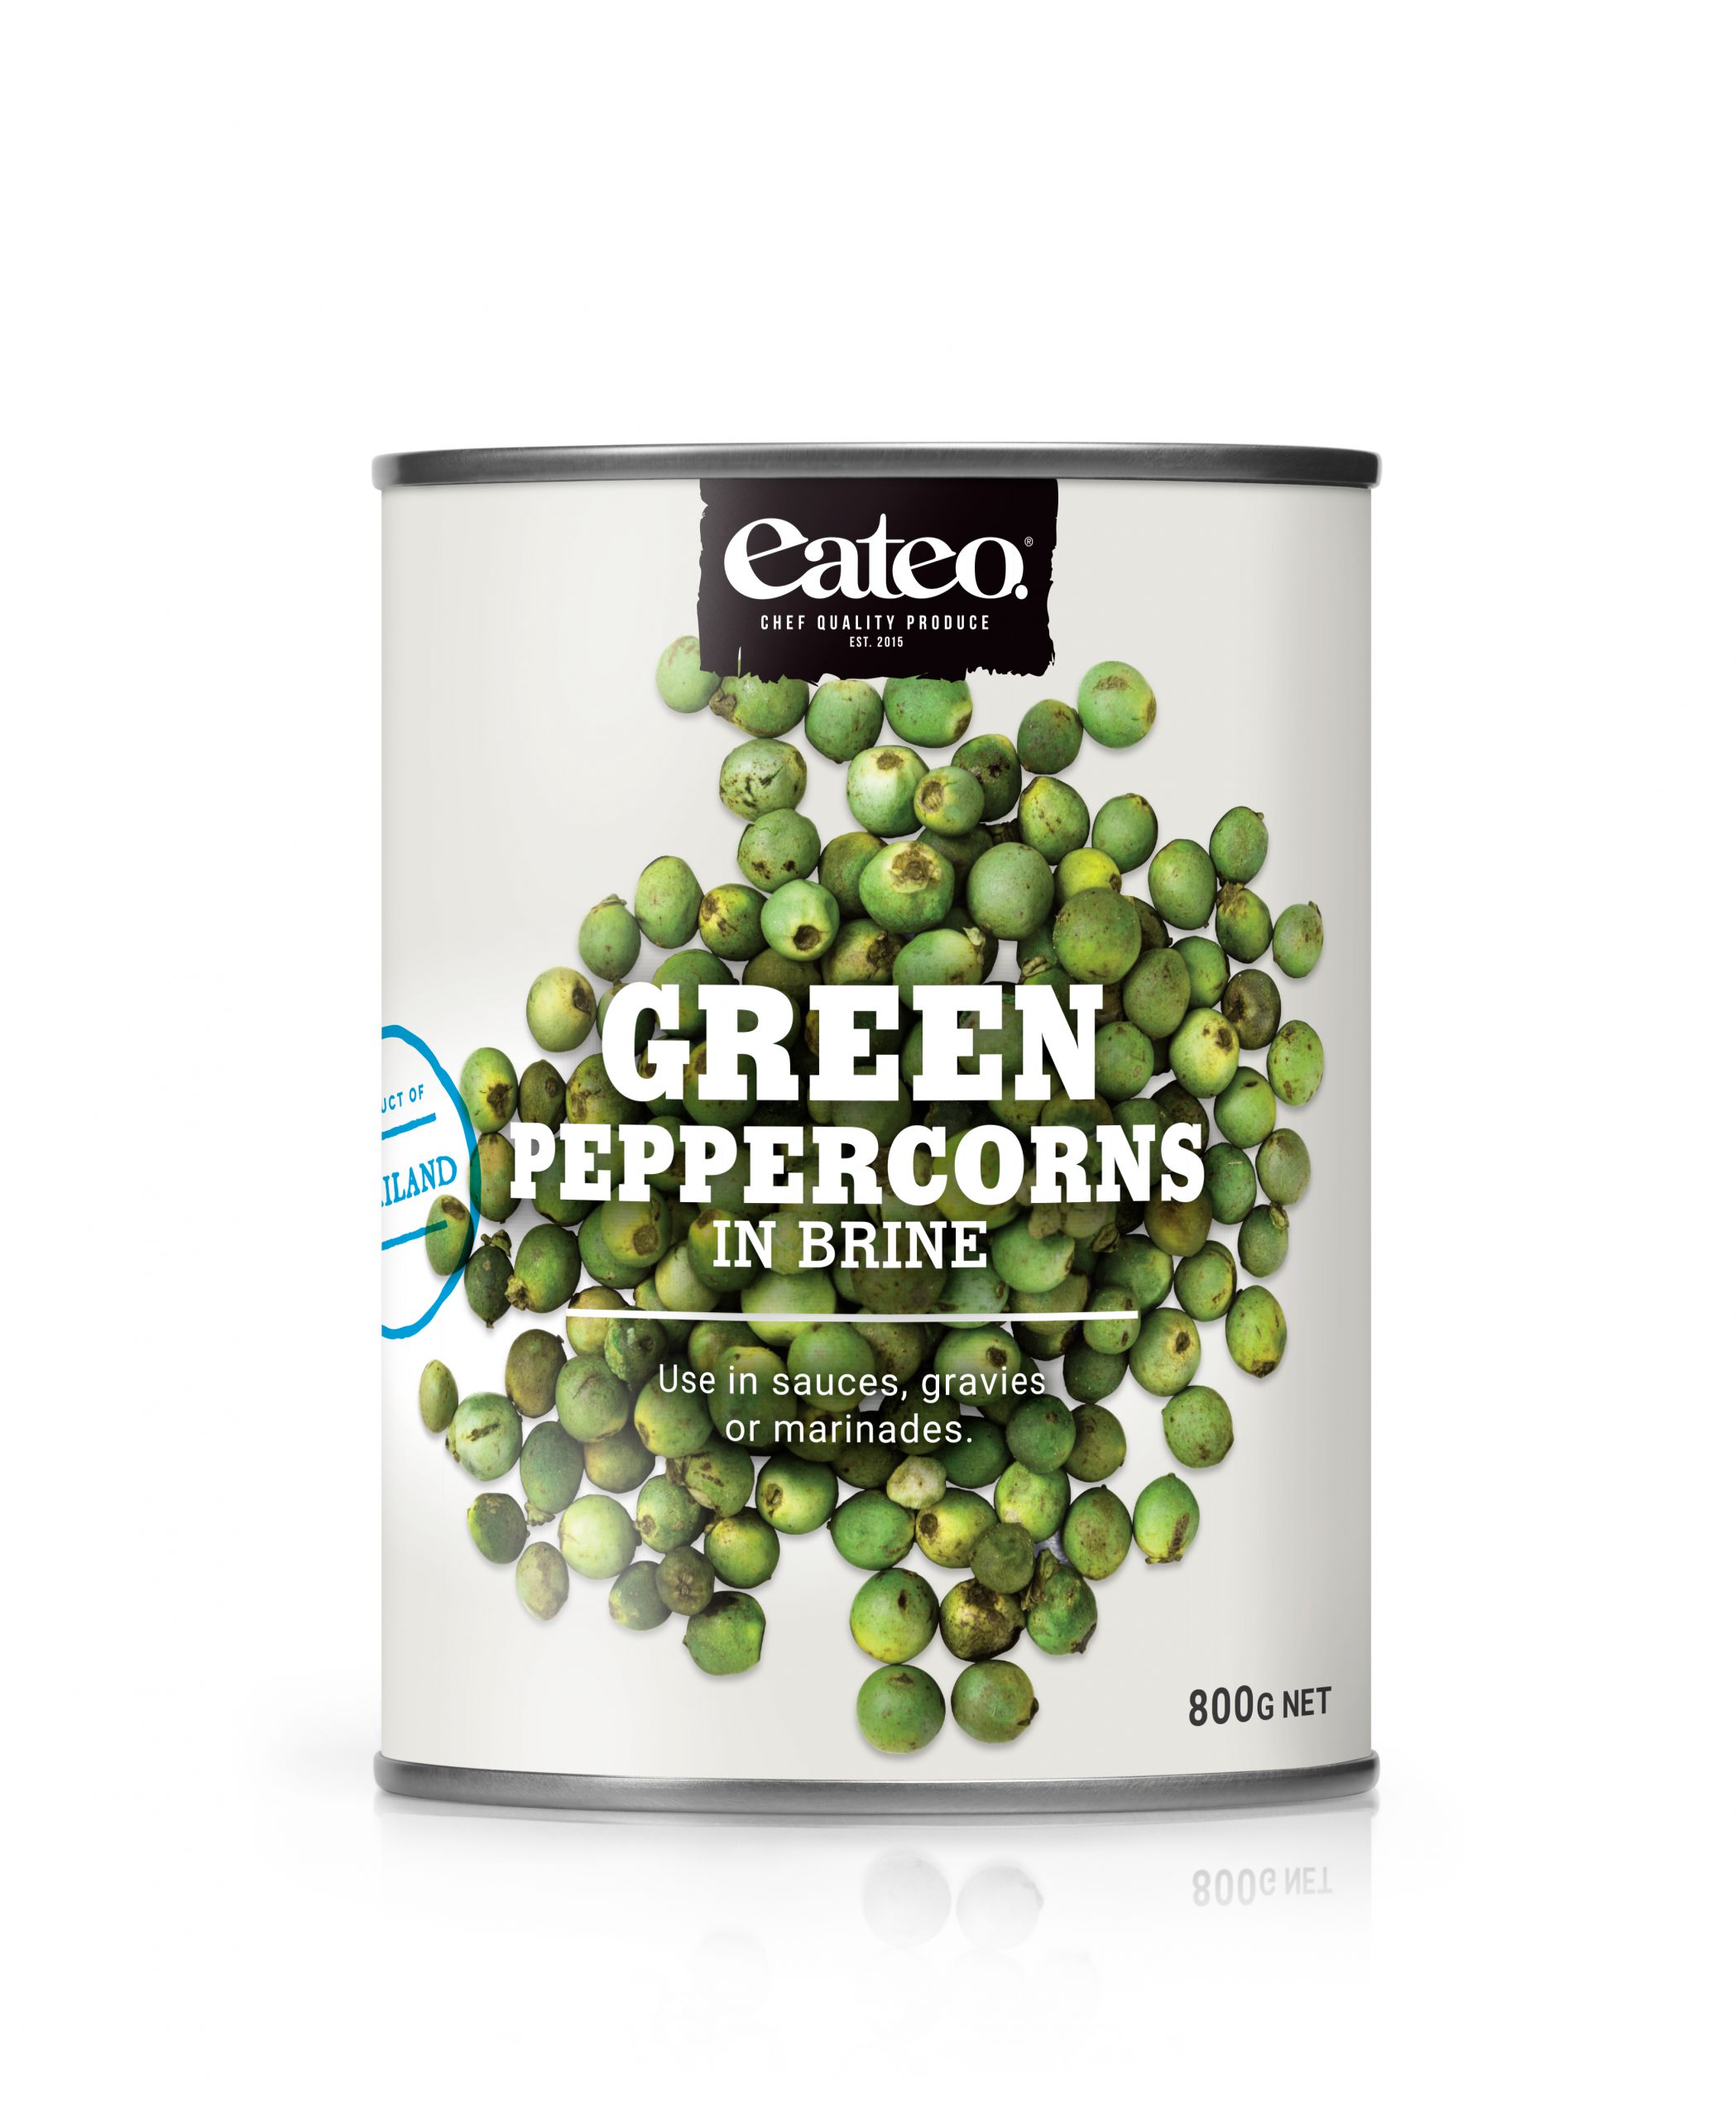 Green Peppercorns in Brine